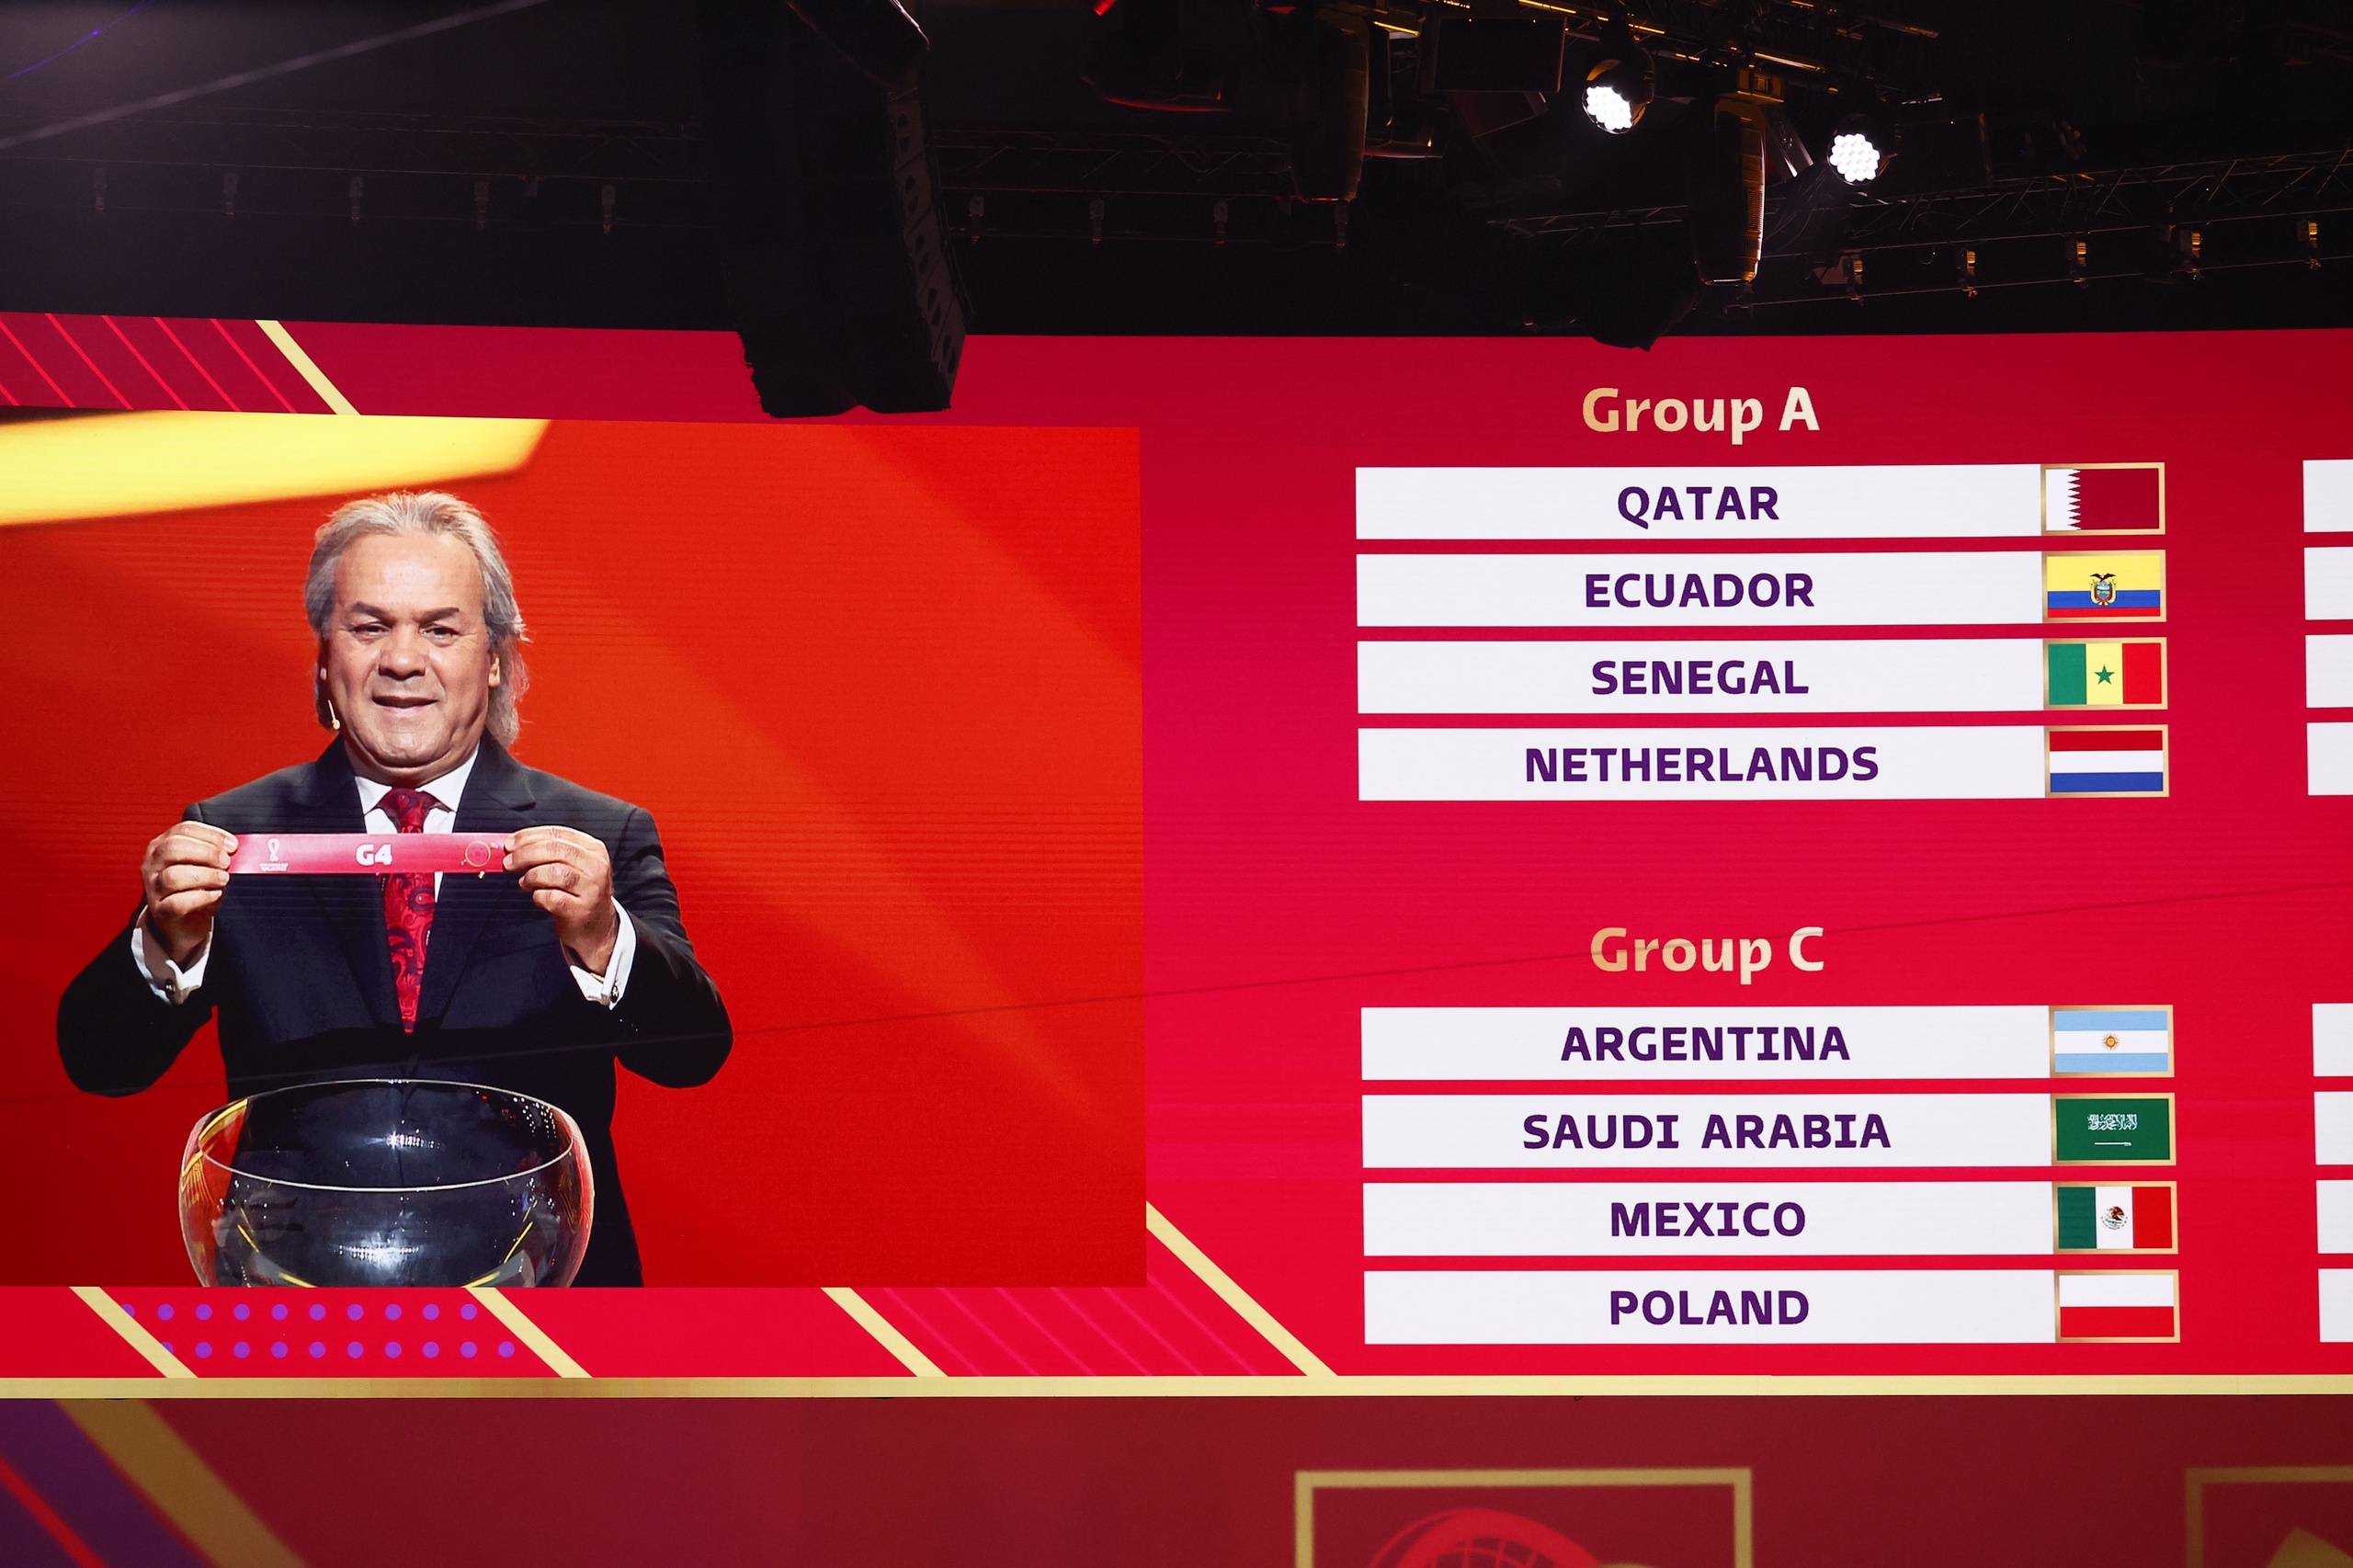 DOHA - Nederland zit in groep A tijdens de loting voor het FIFA-wereldkampioenschap voetbal 2022 in Qatar in et Doha Exhibition & Convention Centre (DECC) op 1 april 2022 in Doha, Qatar.